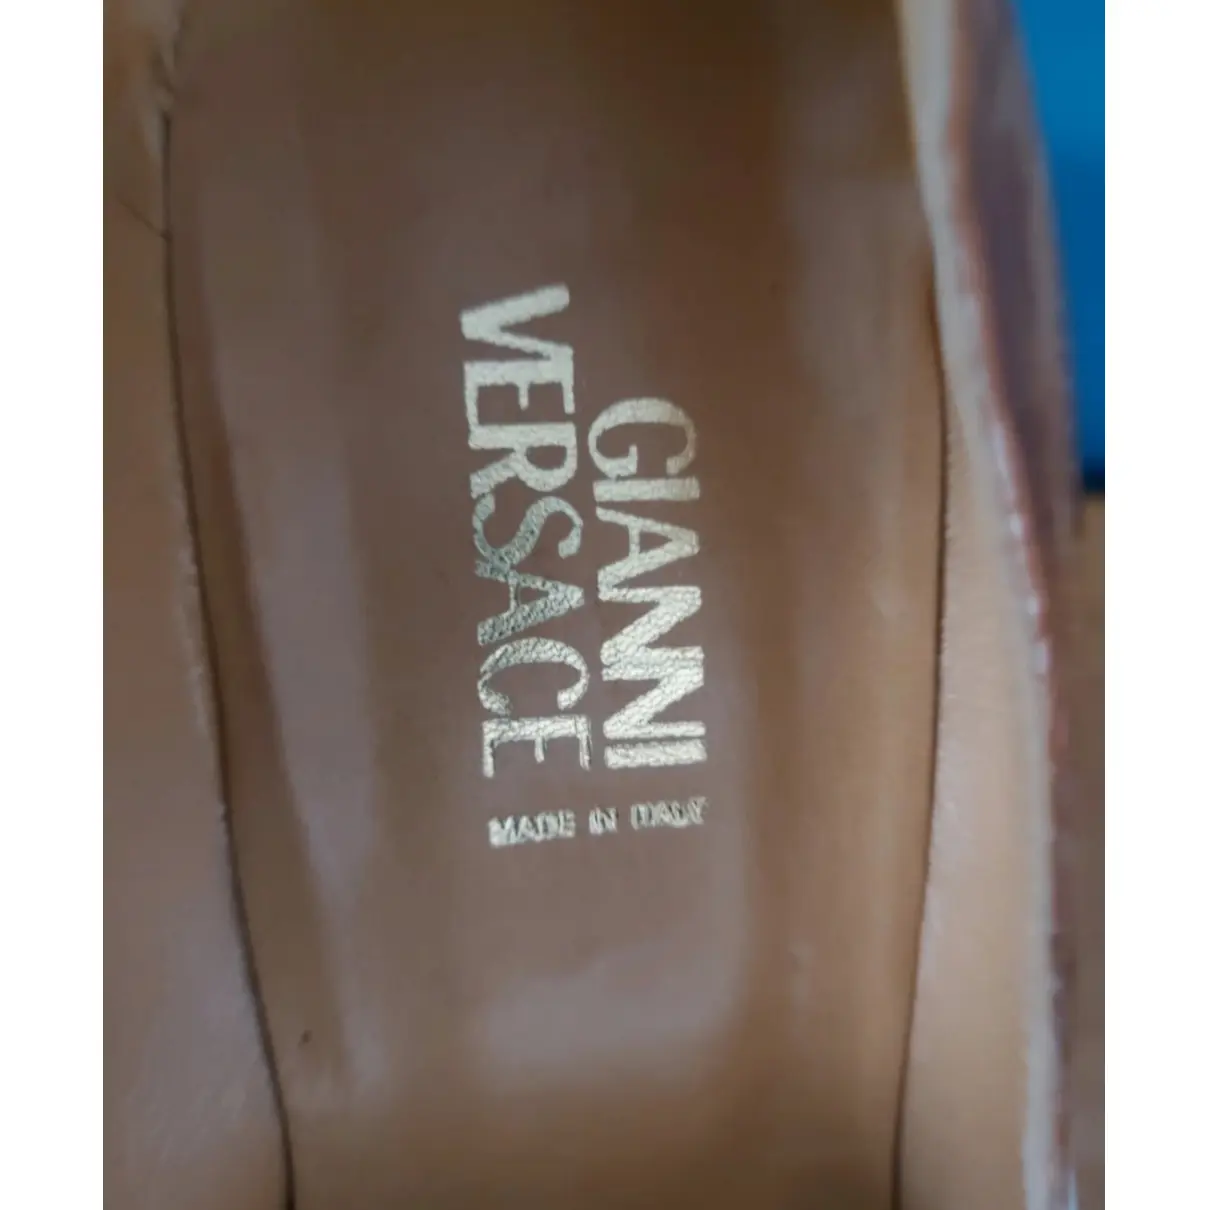 Leather heels Gianni Versace